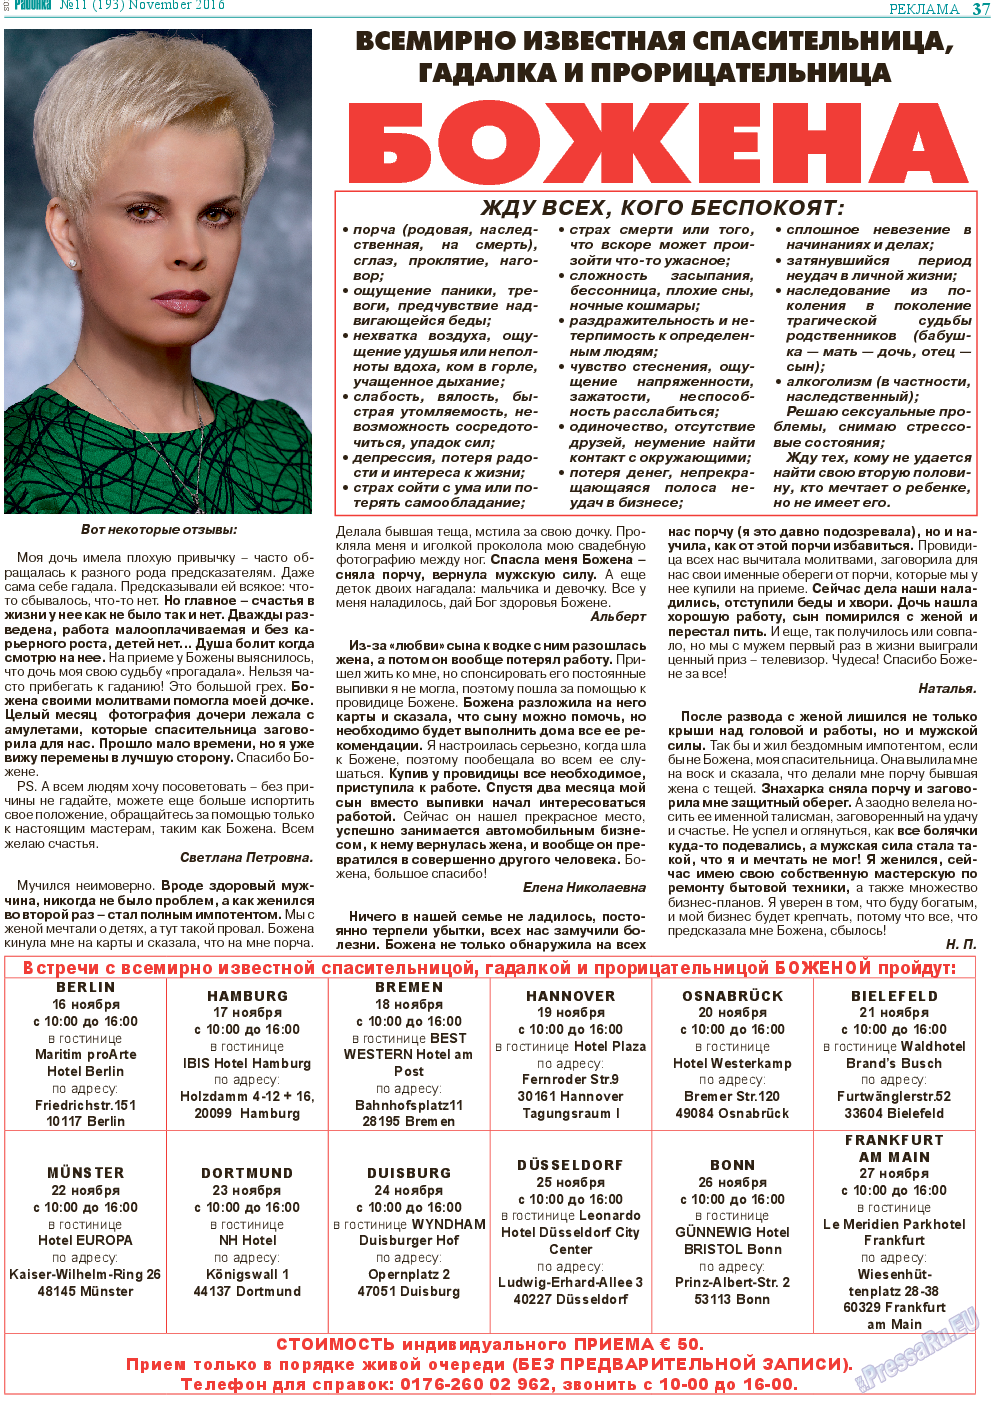 Районка-Süd-West, газета. 2016 №11 стр.37